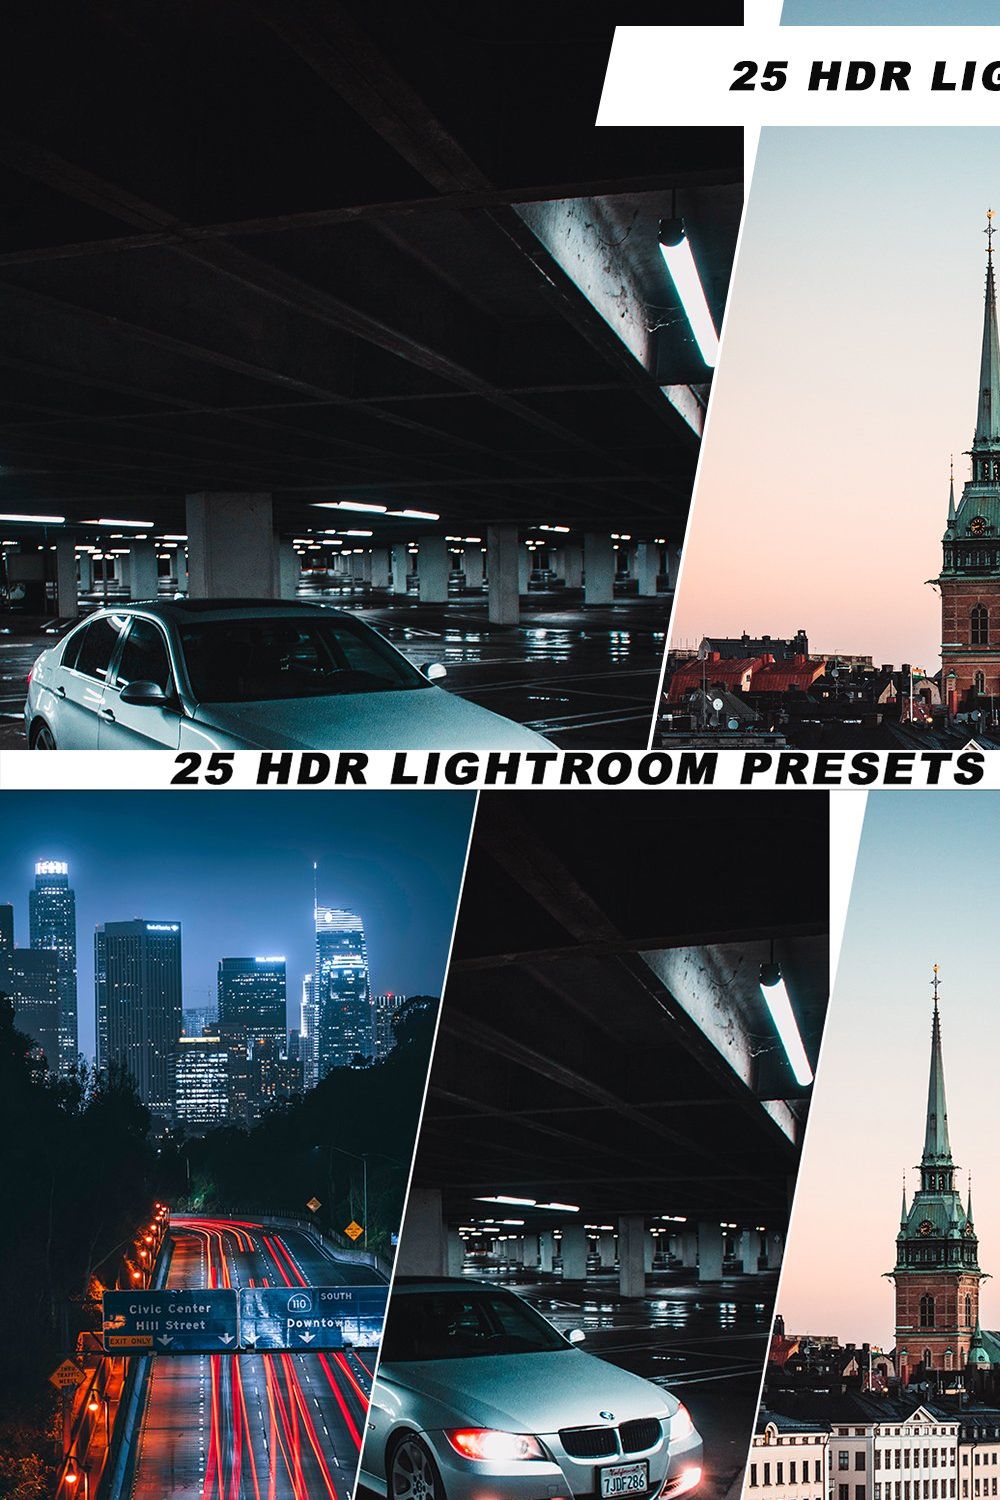 25 HDR Lightroom Presets pinterest preview image.